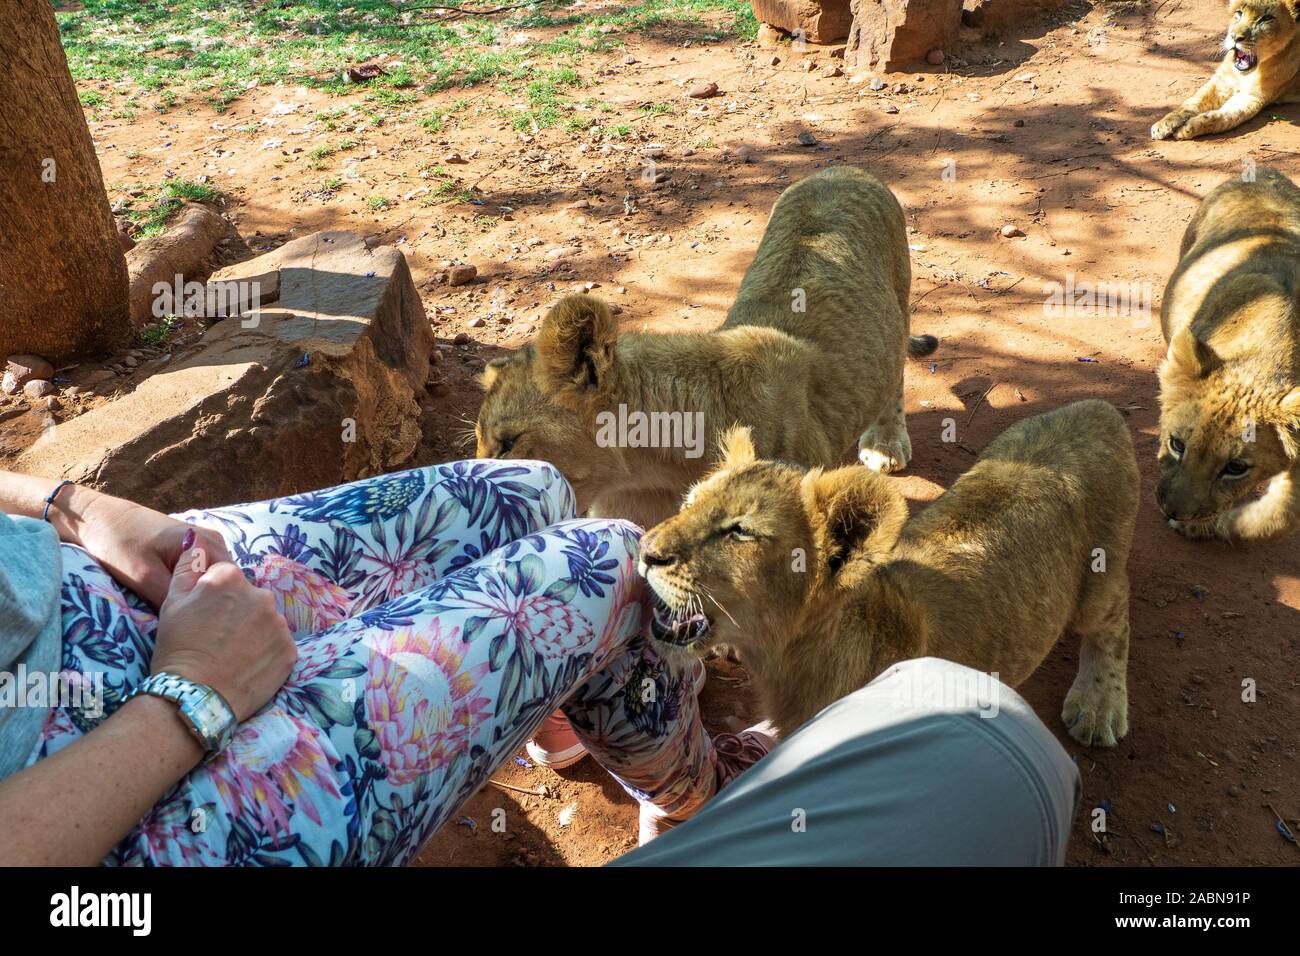 4 mois vieux lion cubs (Panthera leo) approche curieusement les touristes pour flatter à une station près de Cullinan, Afrique du Sud Banque D'Images